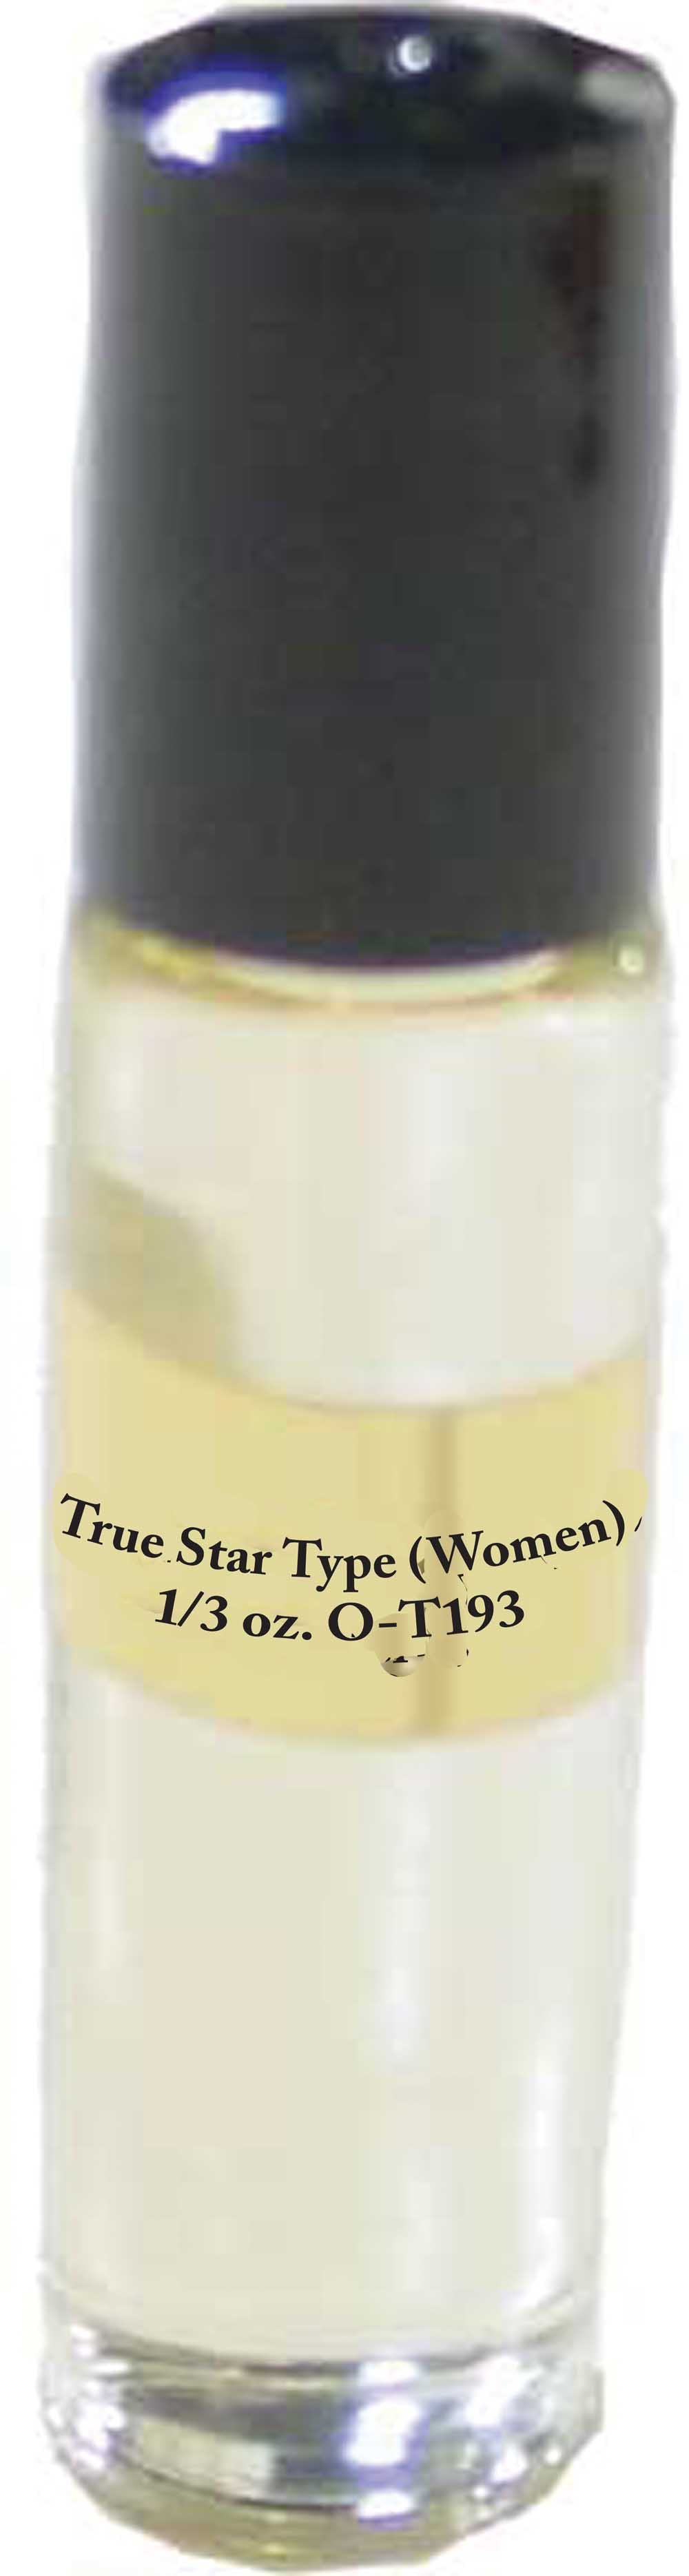 True Star Body Oil Women